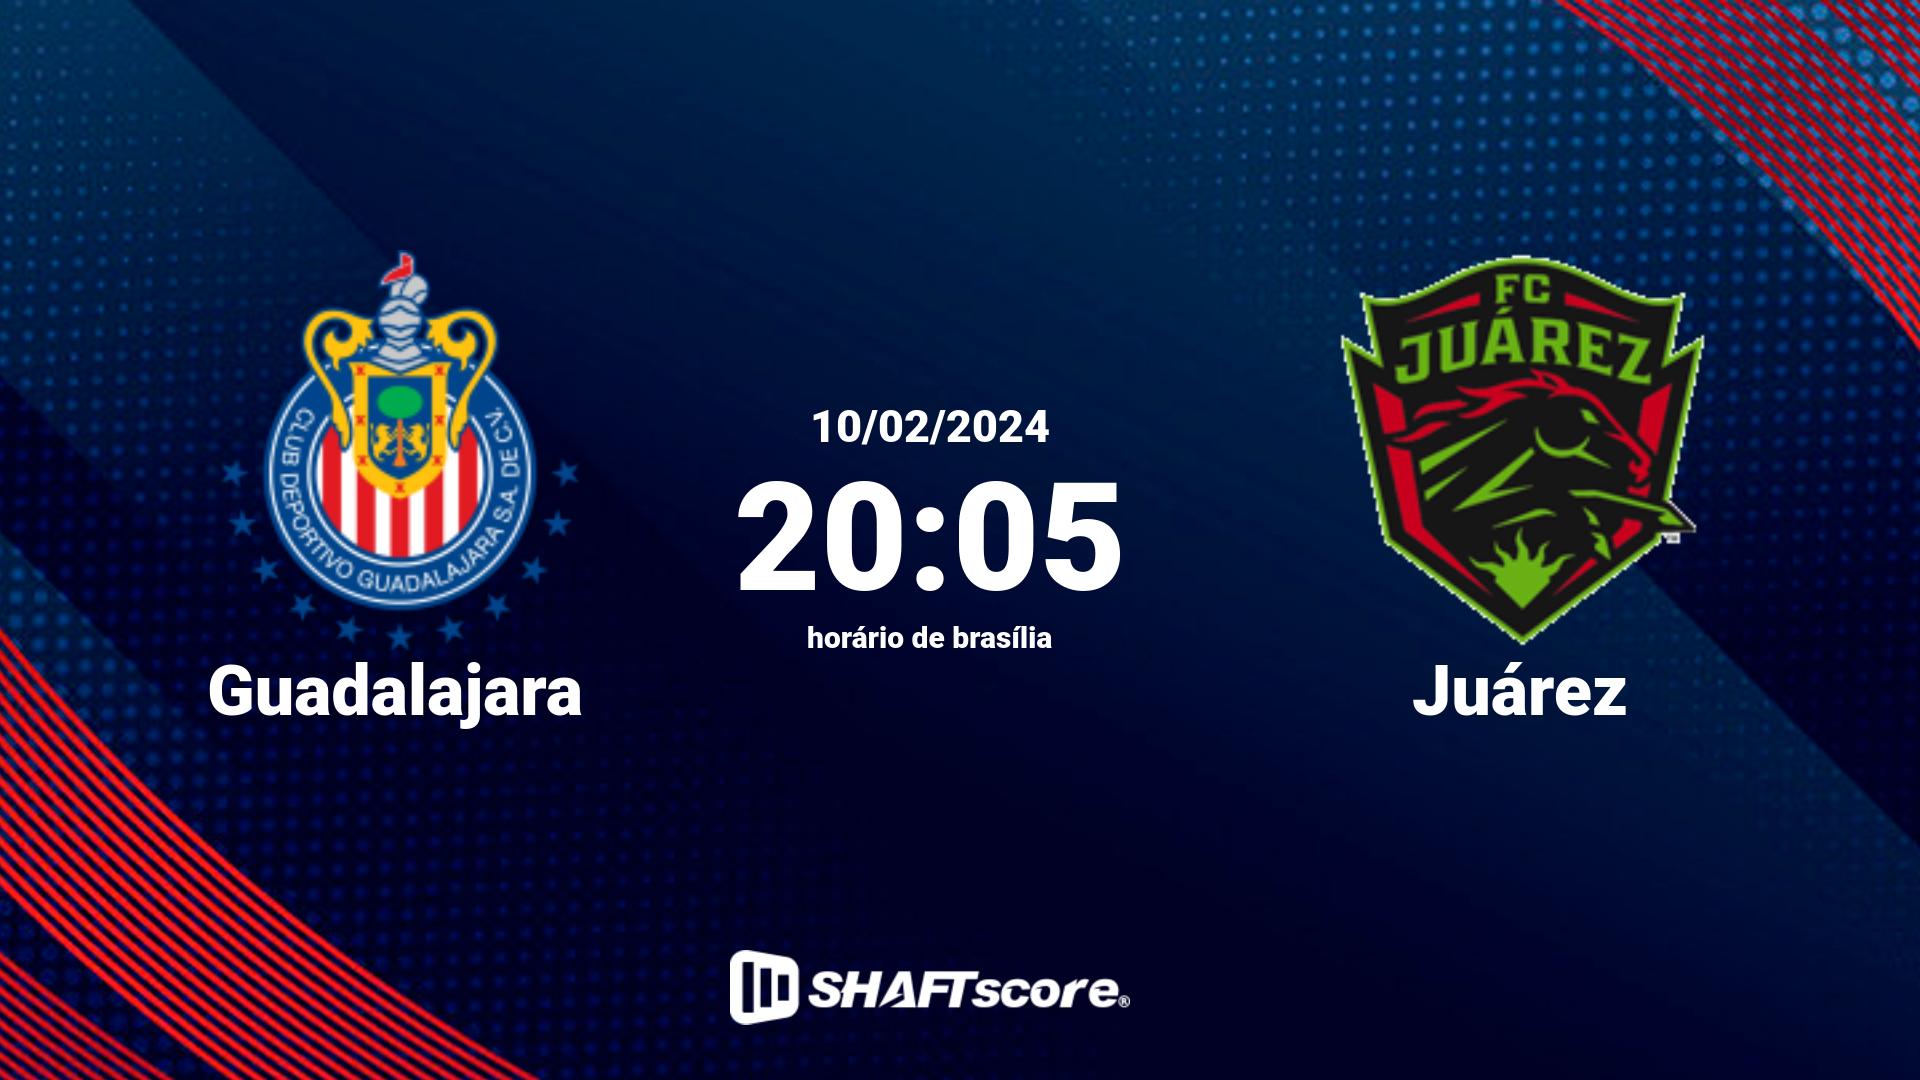 Estatísticas do jogo Guadalajara vs Juárez 10.02 20:05